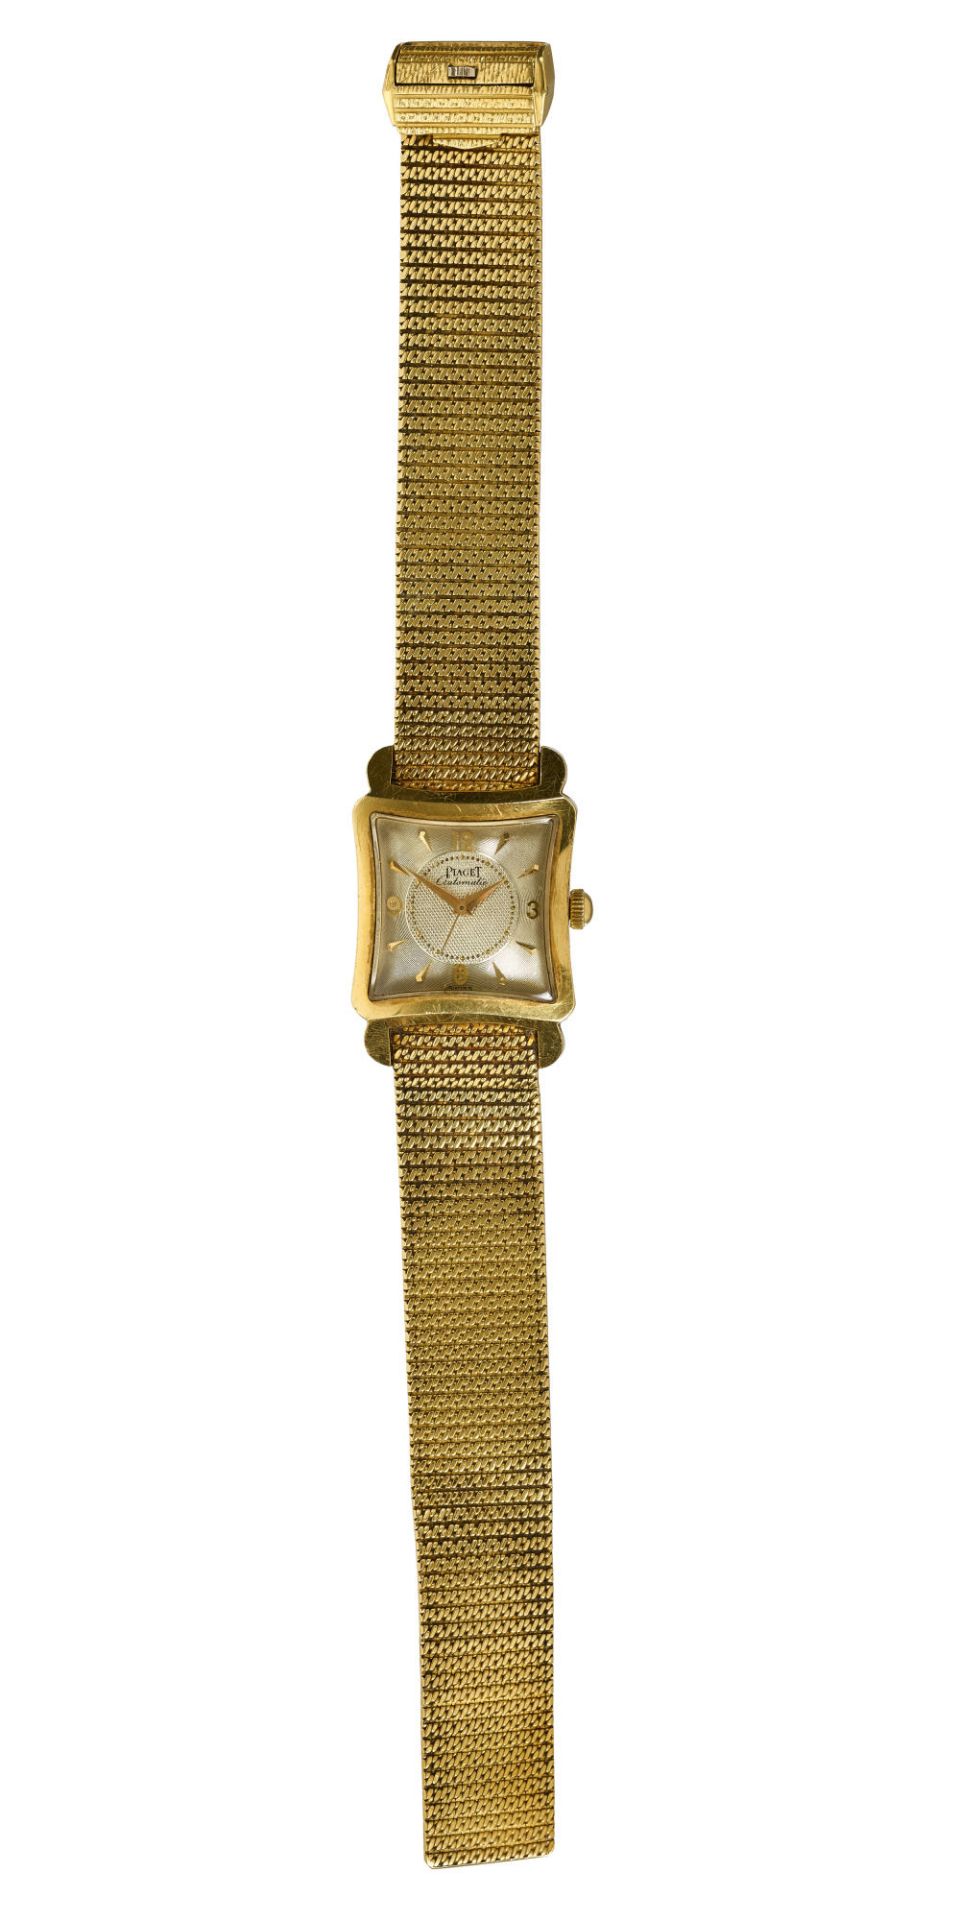 PIAGET: Vintage-Herrenarmbanduhr. / Piaget, Vintage-gentleman's wristwatch. - Image 2 of 2